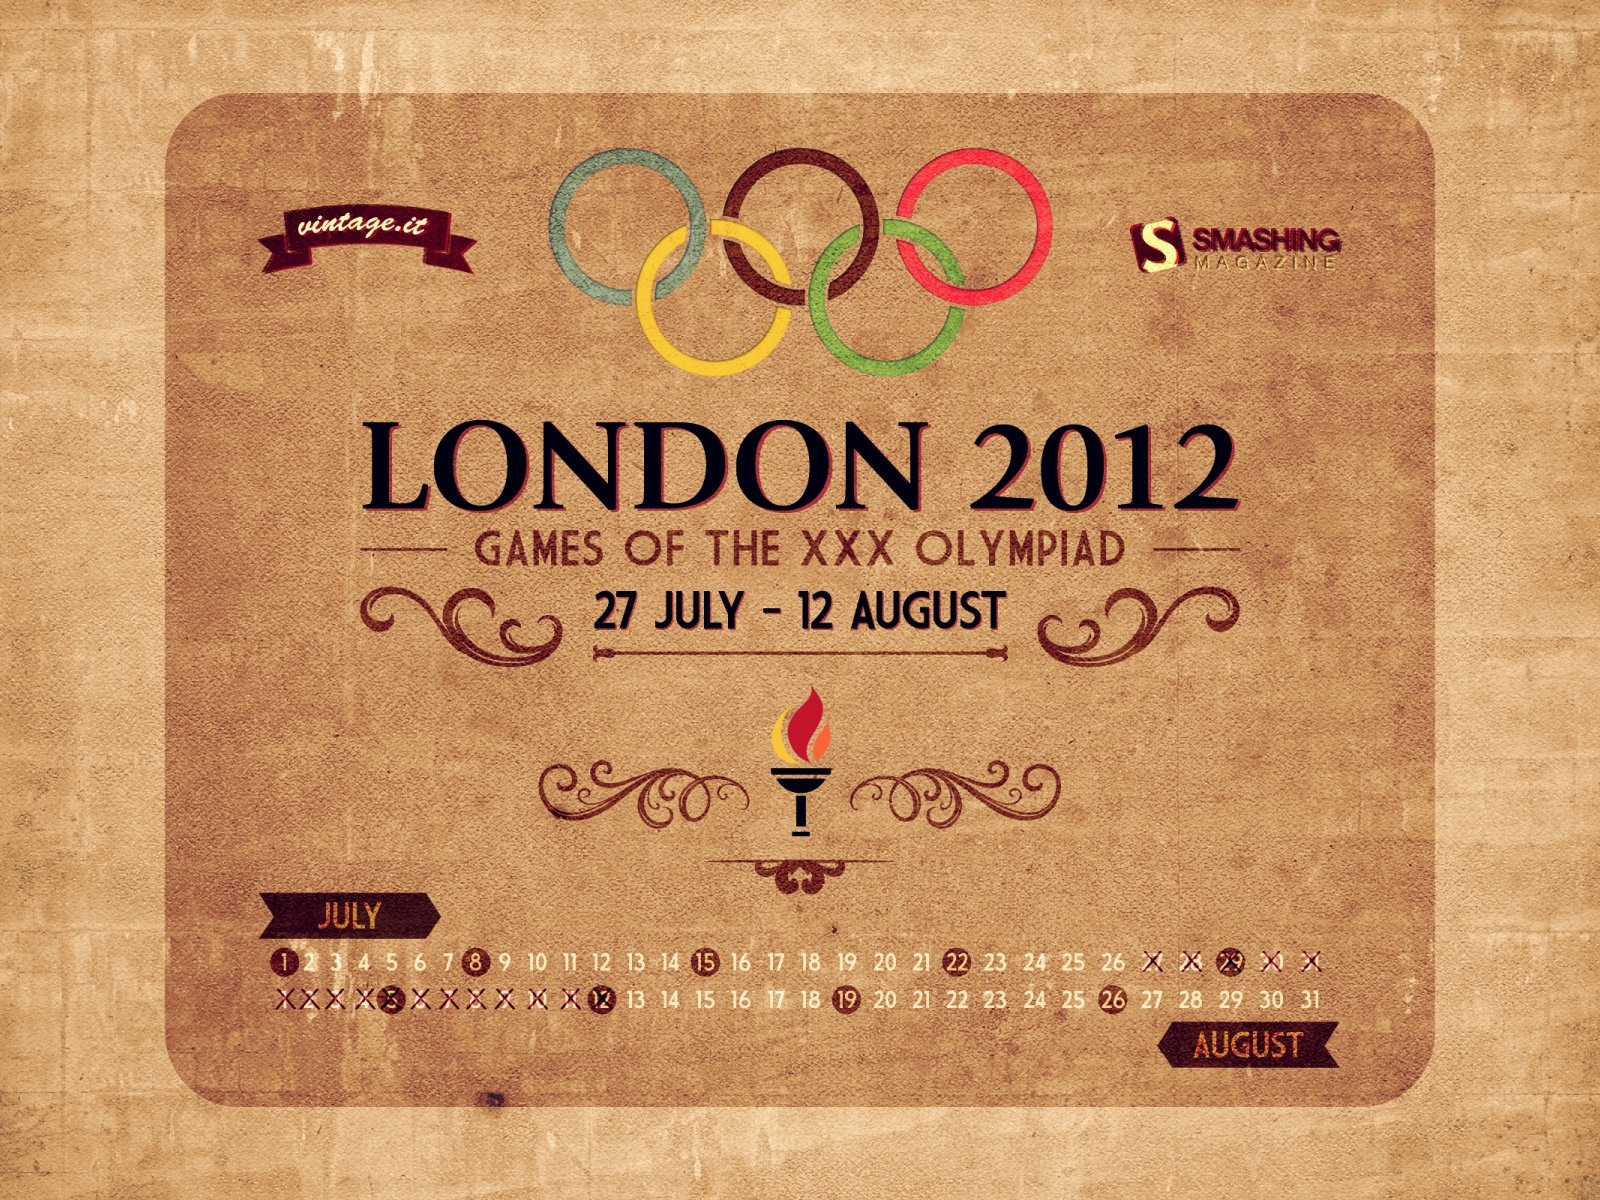 Londres 2012 Olimpiadas fondos temáticos (1) #24 - 1600x1200